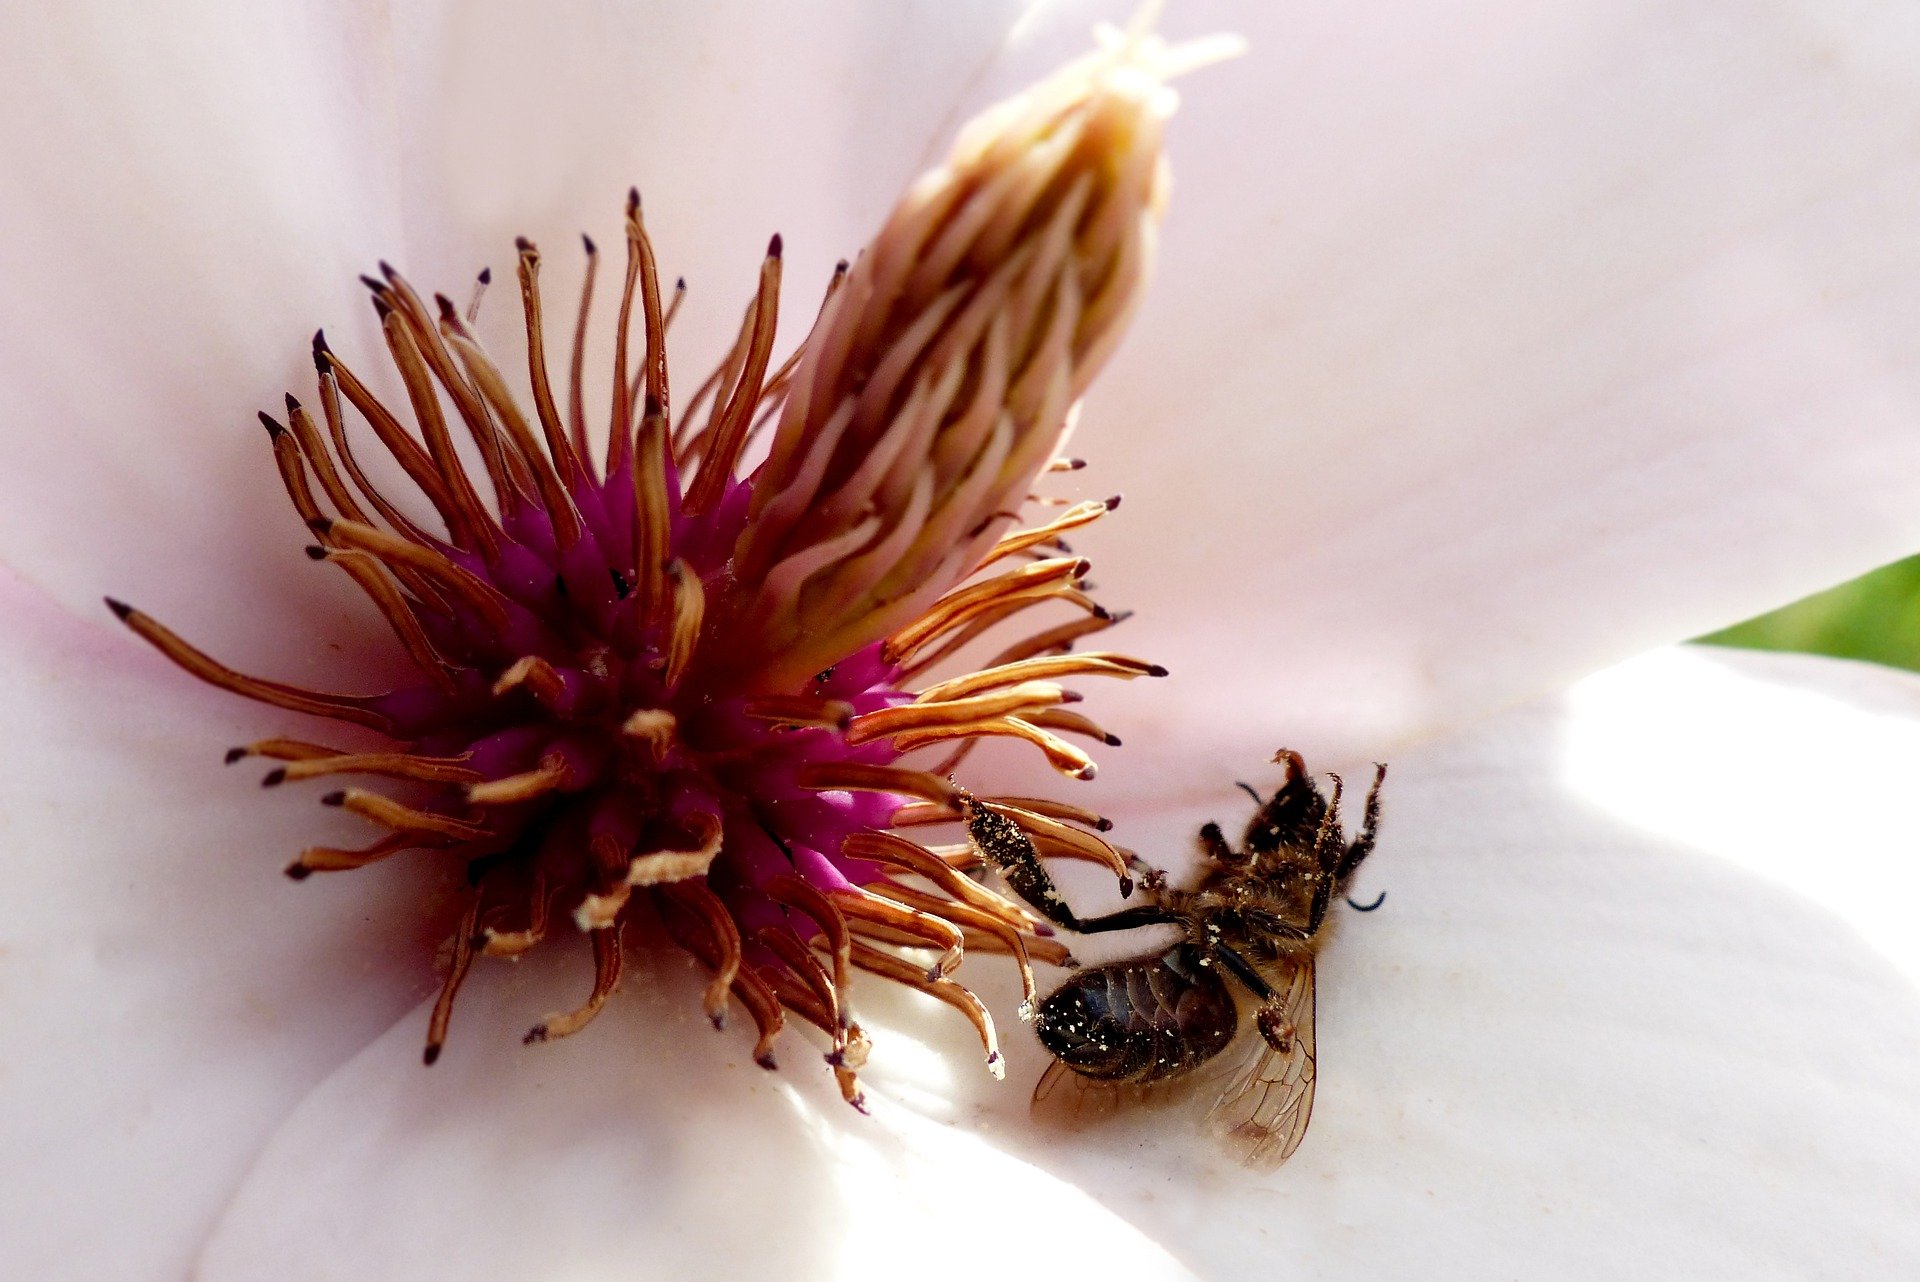 Bild von toter Biene